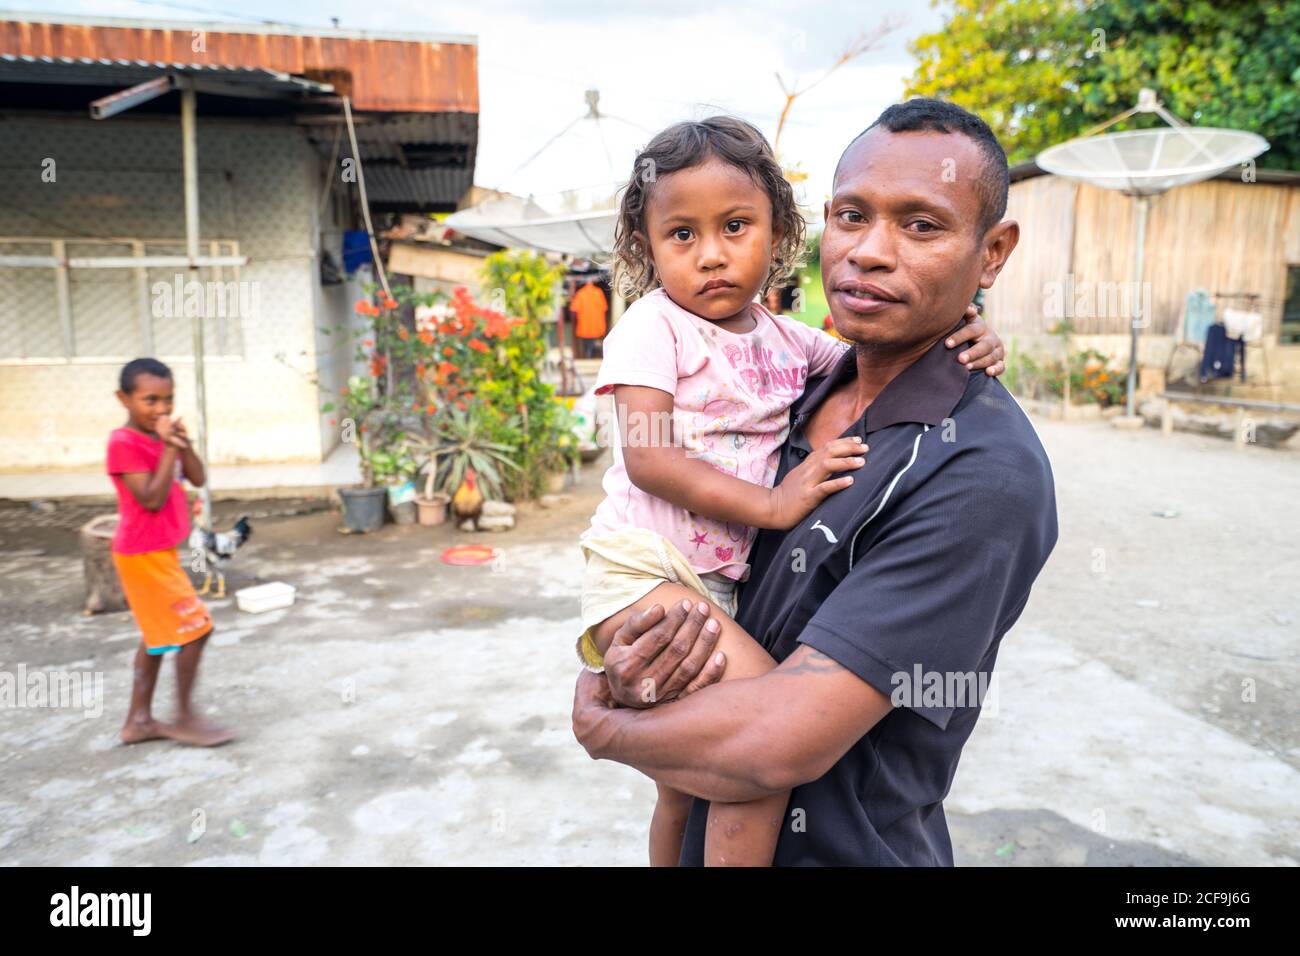 Dili, Timor Est - 08 AGOSTO 2018: Povero giovane padre asiatico che tiene la bambina e guarda la macchina fotografica mentre si trova sulla strada accanto a casa con il ragazzo in background Foto Stock